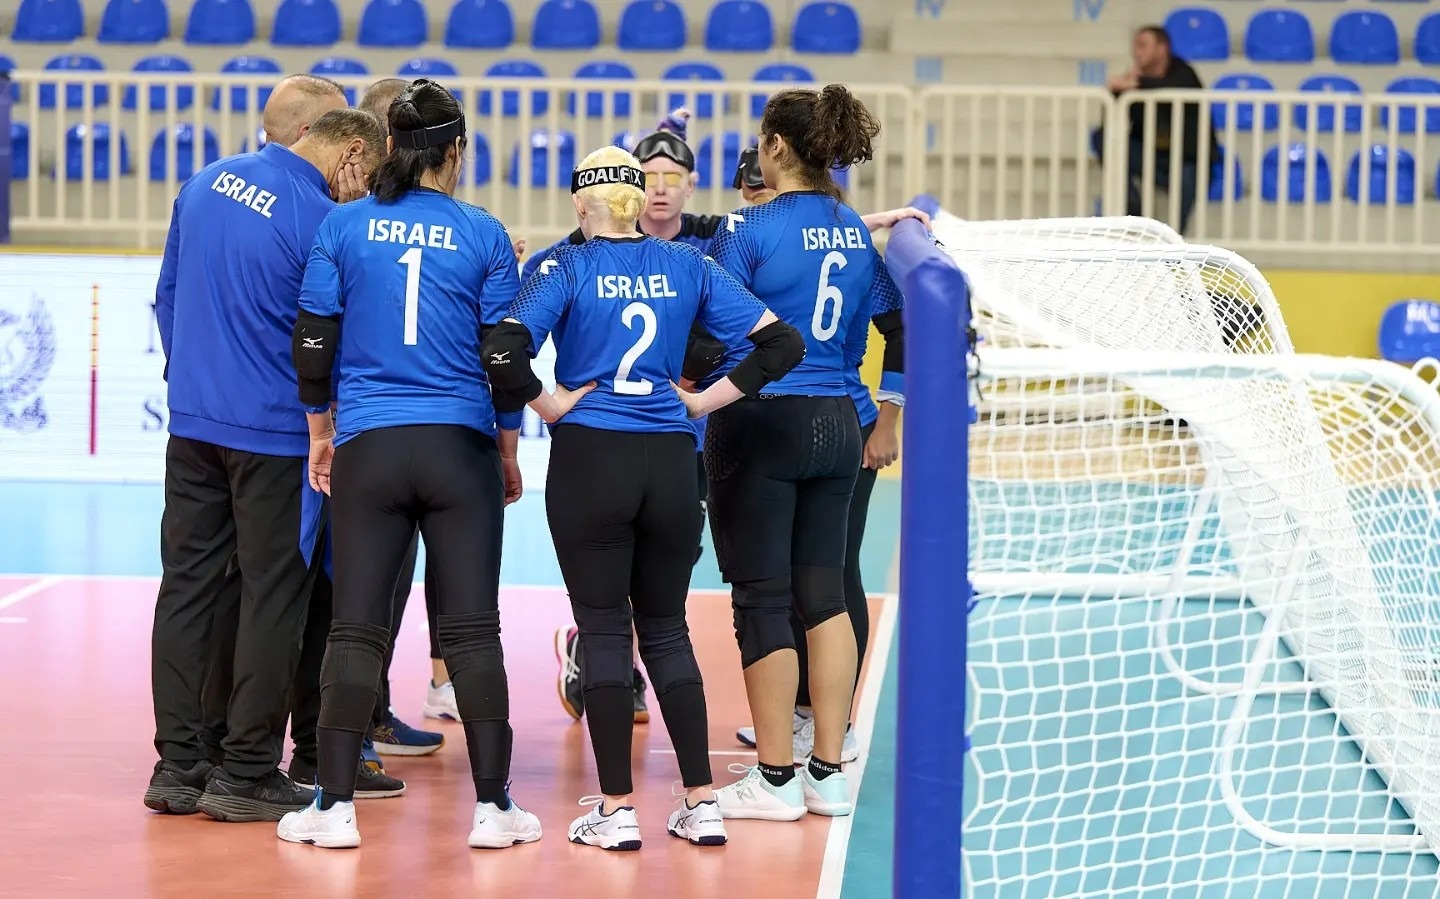 נבחרת הנשים של ישראל בכדורשער באליפות אירופה (צילום: איגוד הכדורשער האירופי)